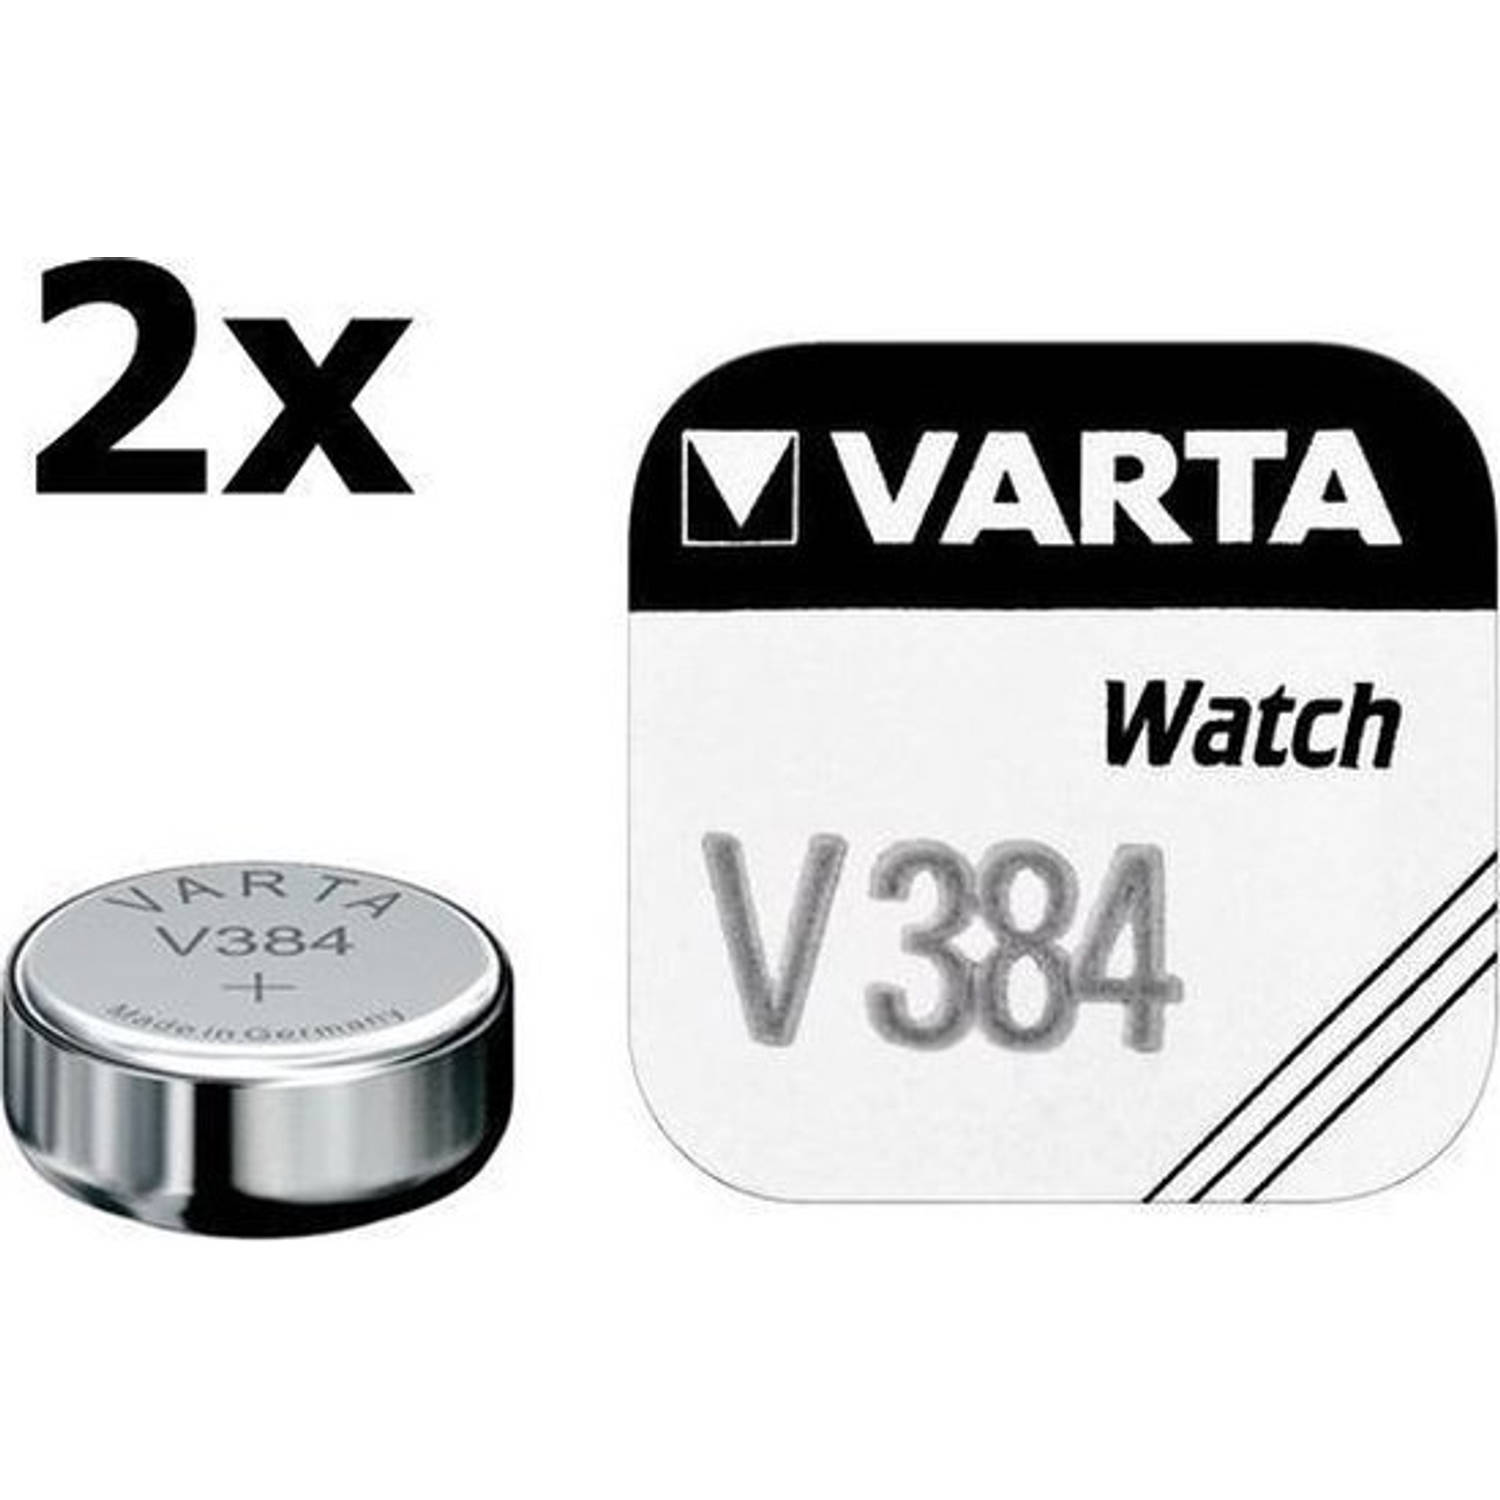 2 Stuks - Varta V384 38mAh 1.55V knoopcel batterij